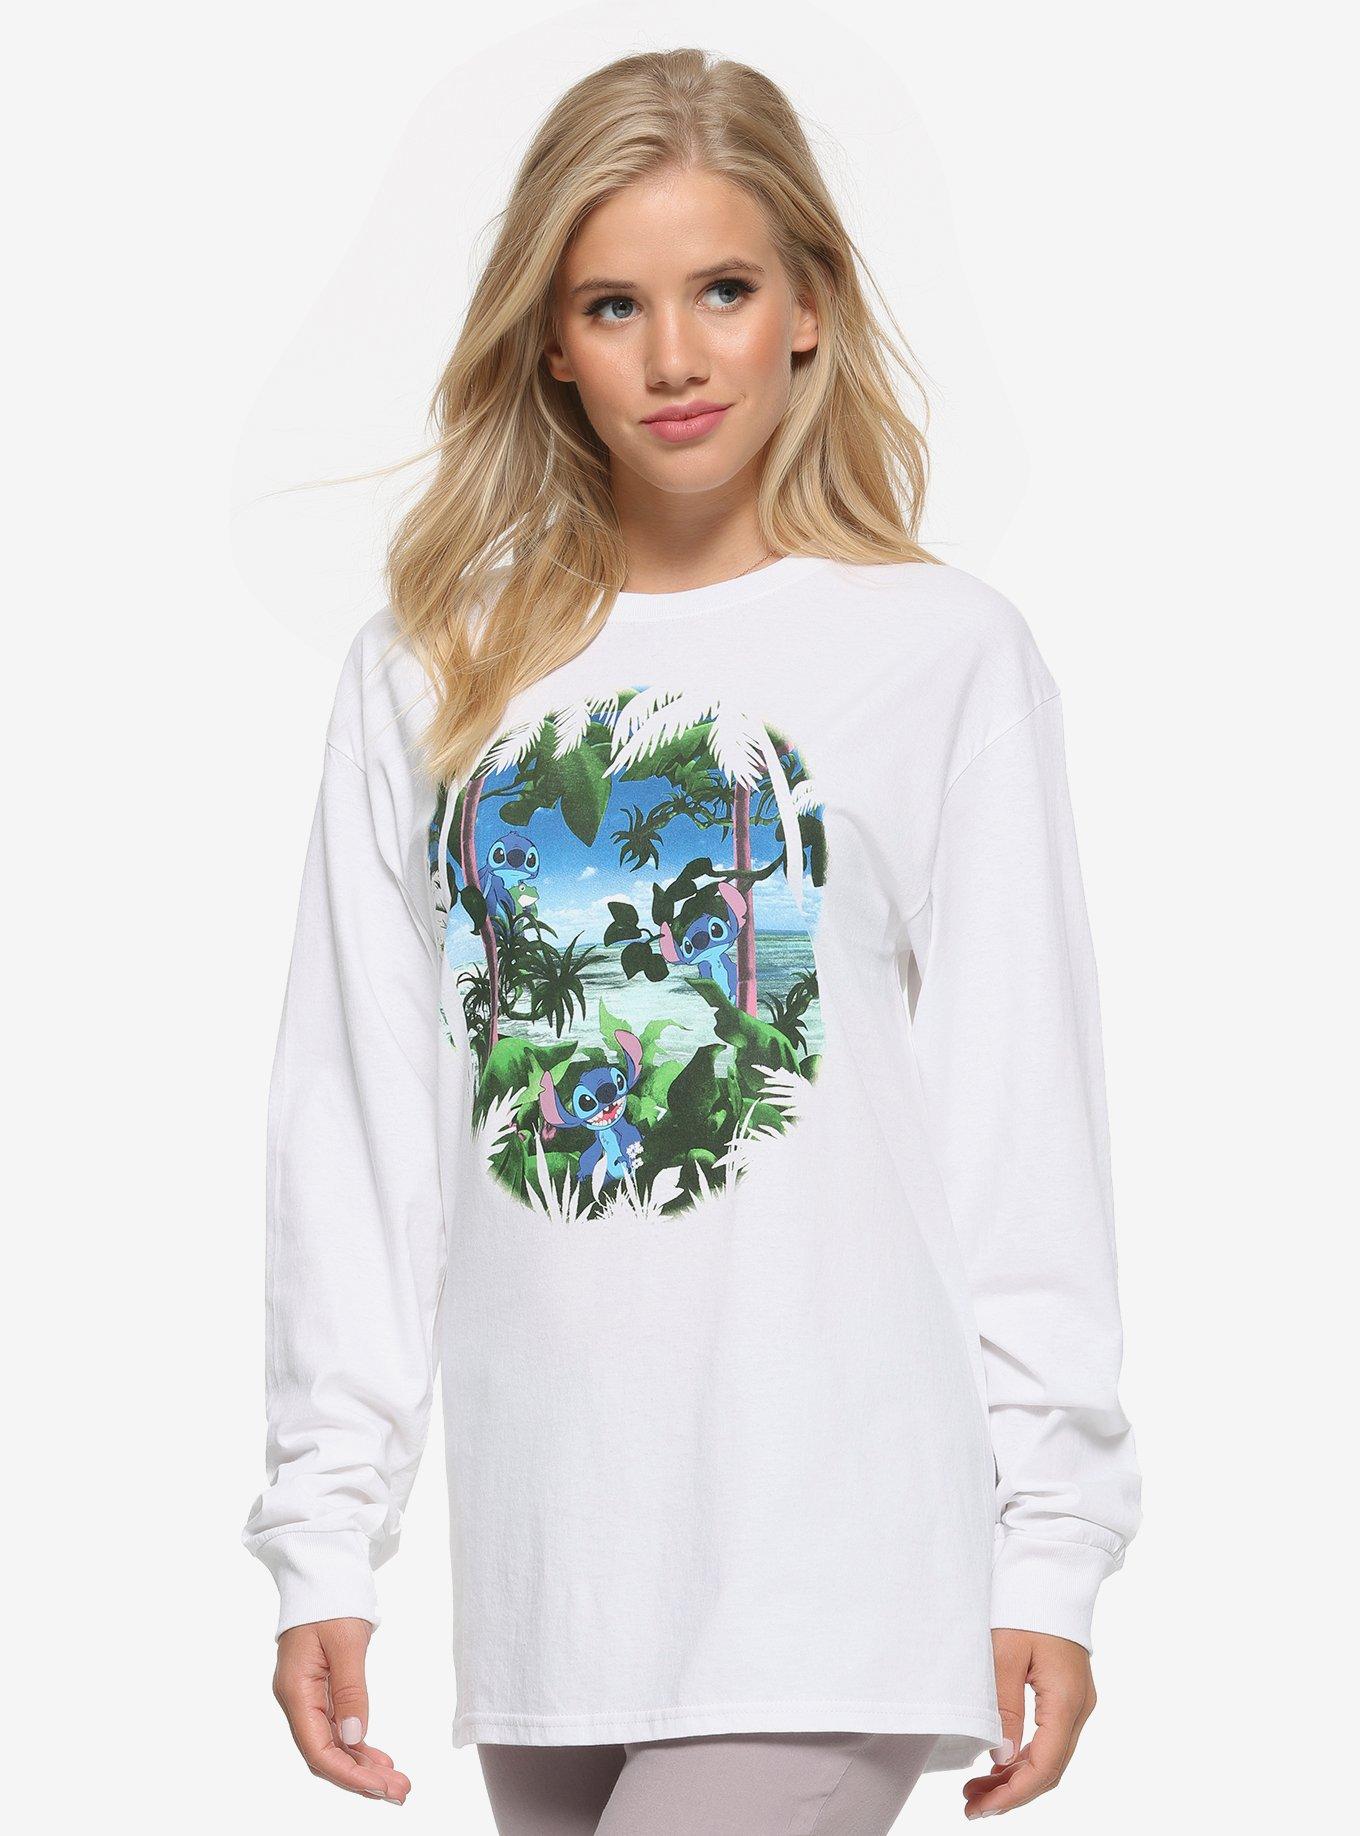 Boxlunch Disney Lilo & Stitch Gifts Womens T-Shirt